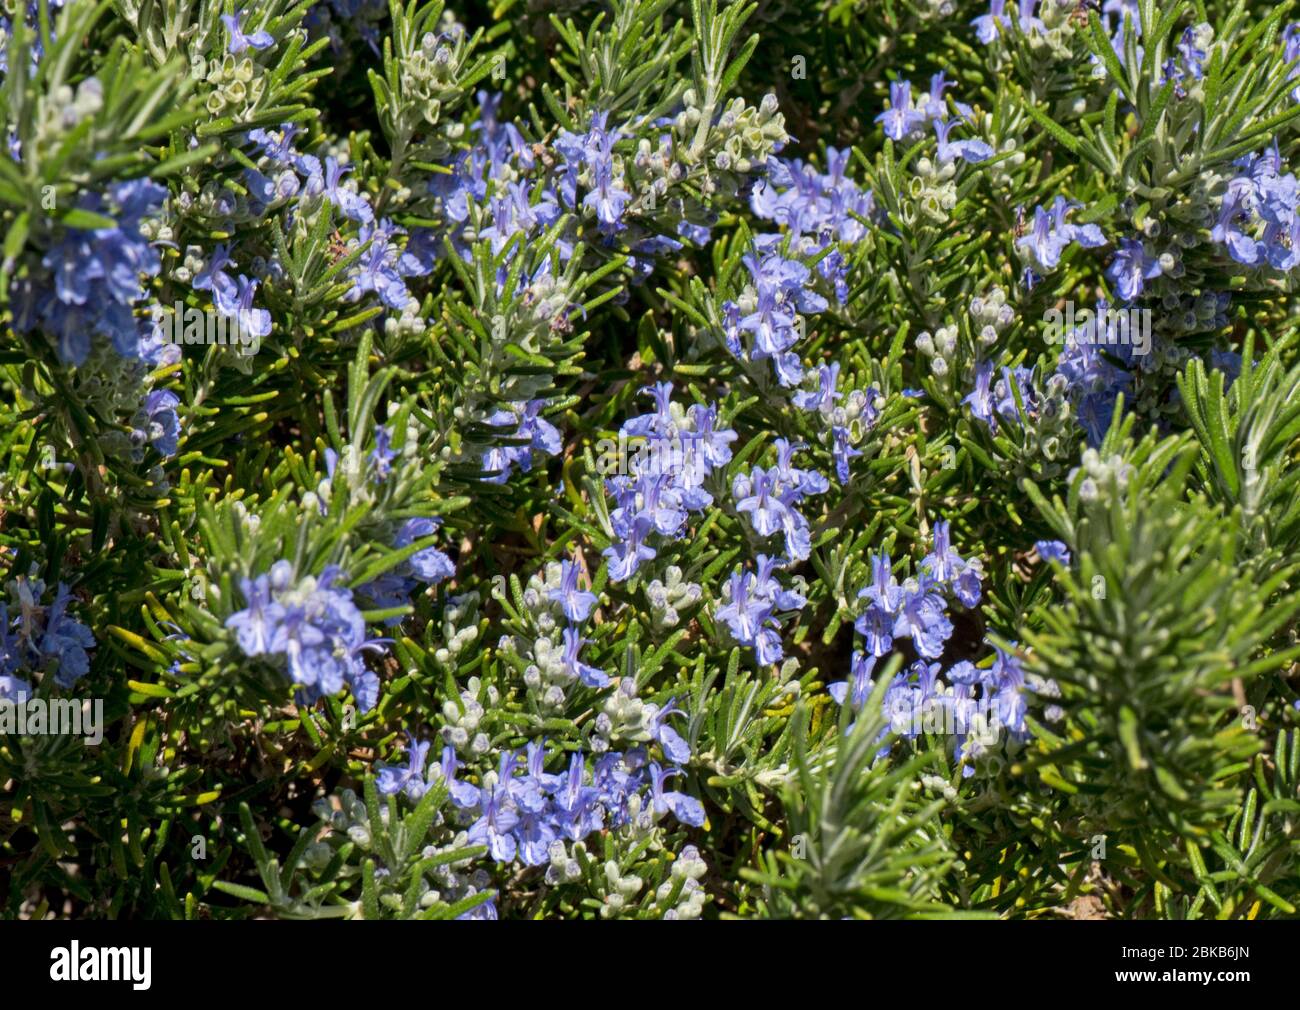 Fleurs bleues de romarin (Rosmarinus officinaris prostratus) sur herbe de prostrate attirante pour les abeilles et autres invertébrés, avril Banque D'Images